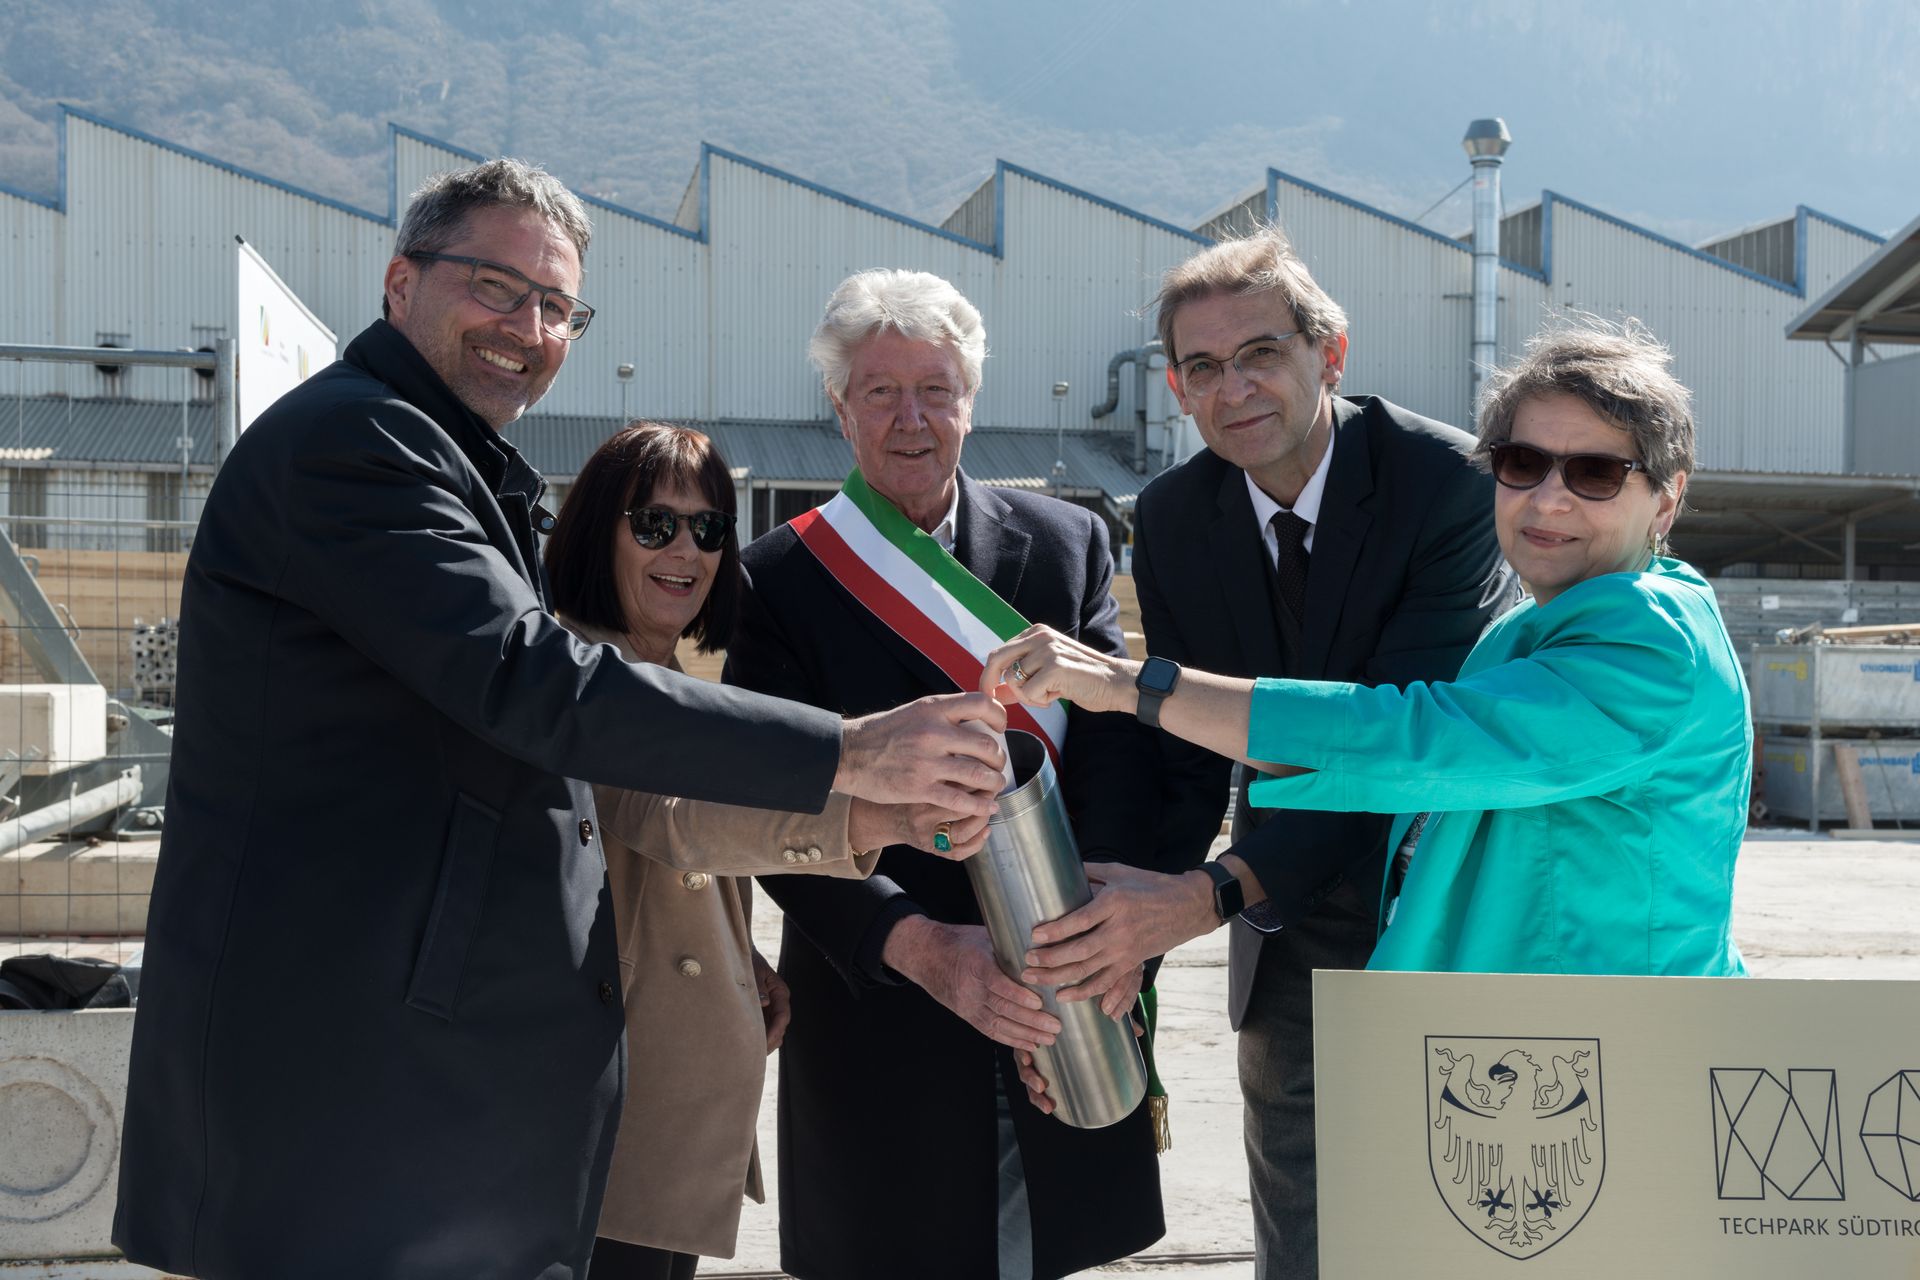 È stata celebrata il 23 marzo al NOI Techpark la “posa della prima pietra” della futura Facoltà di ingegneria della Libera Università di Bolzano, con la quale il distretto dell'innovazione dell'Alto Adige/Südtirol si appresta ad entrare in una nuova dimensione